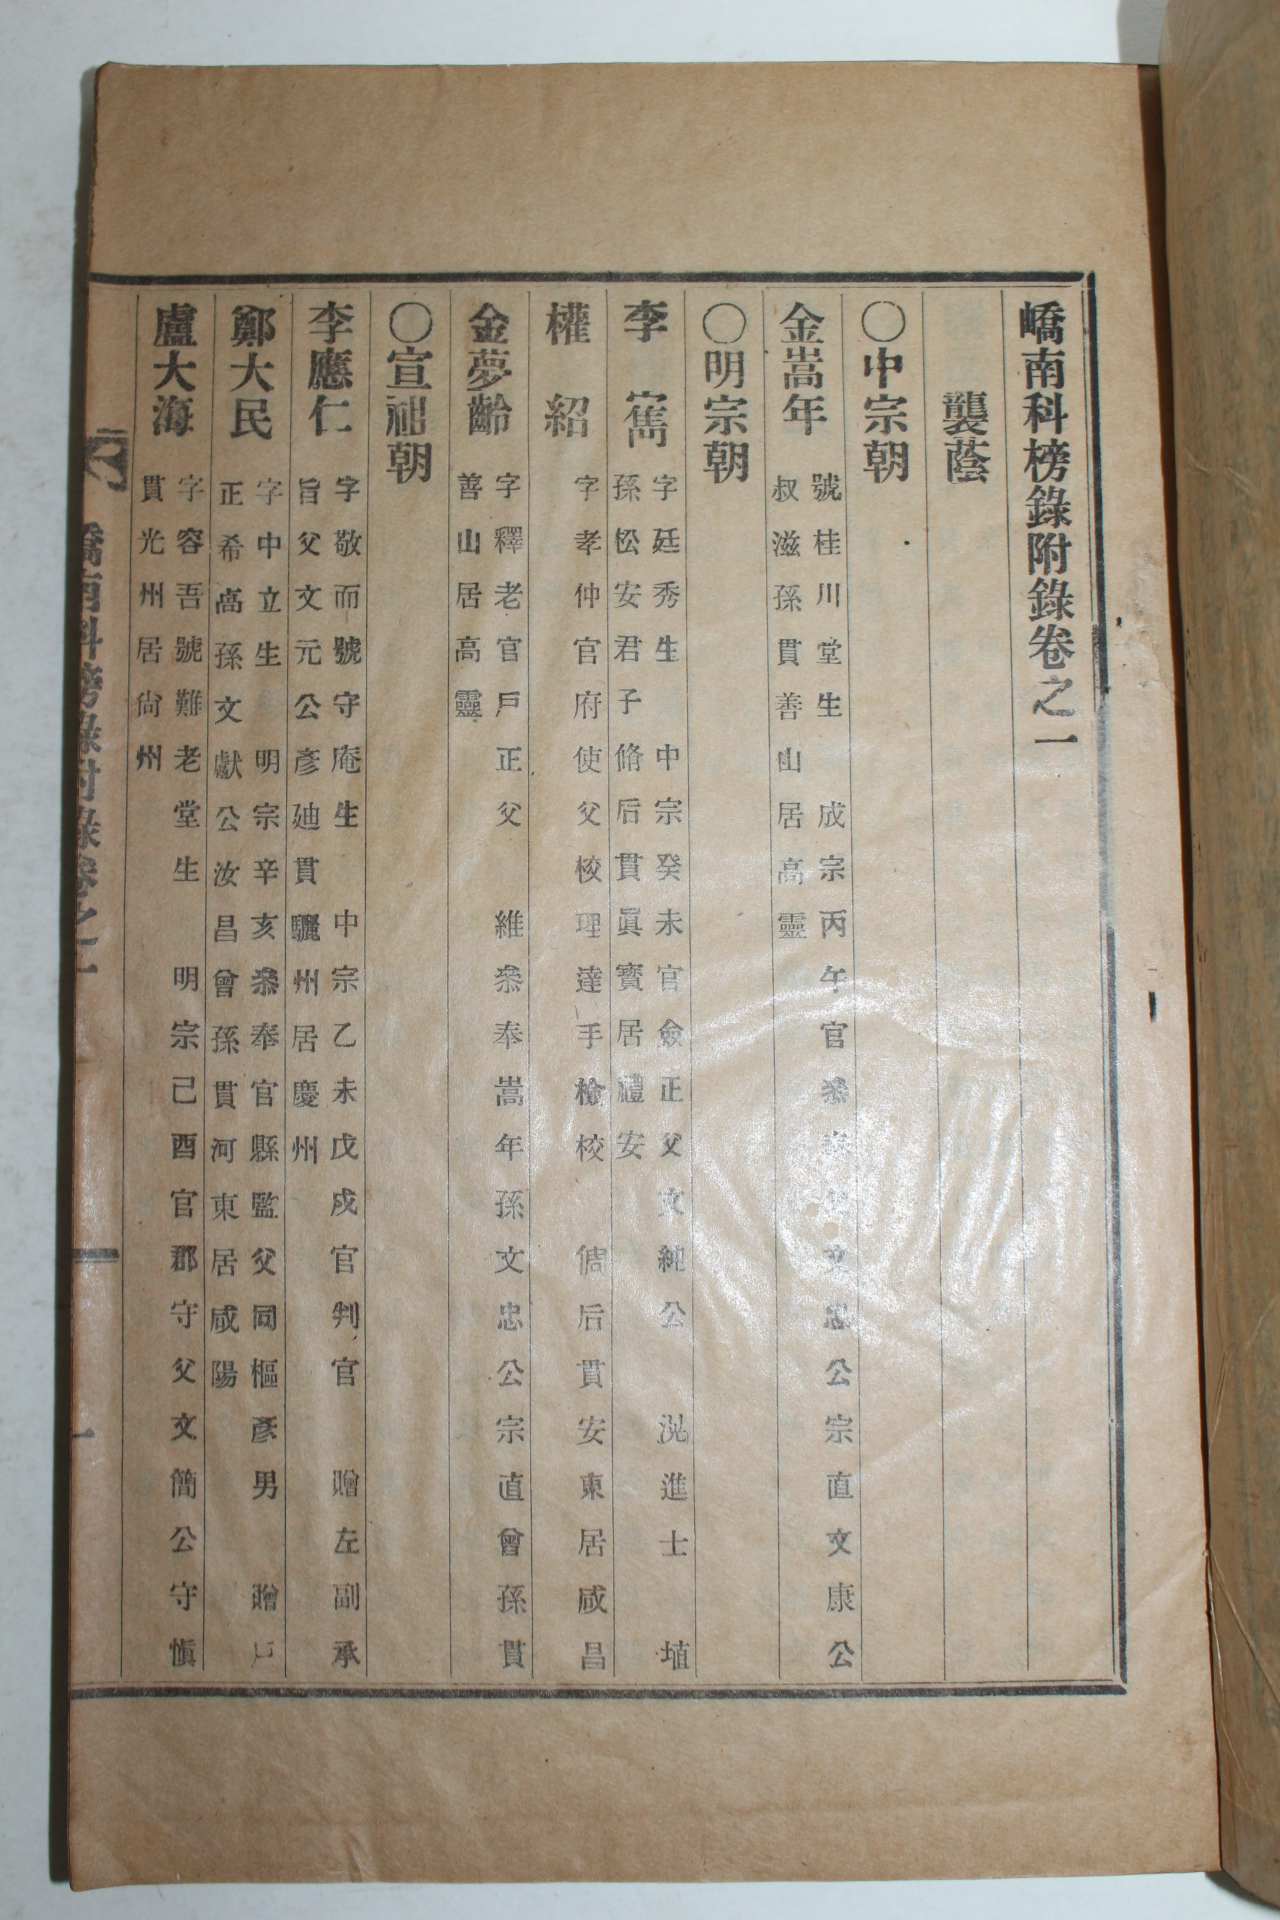 1938년 밀양 교남과방록(嶠南科榜錄)부록 3권2책완질